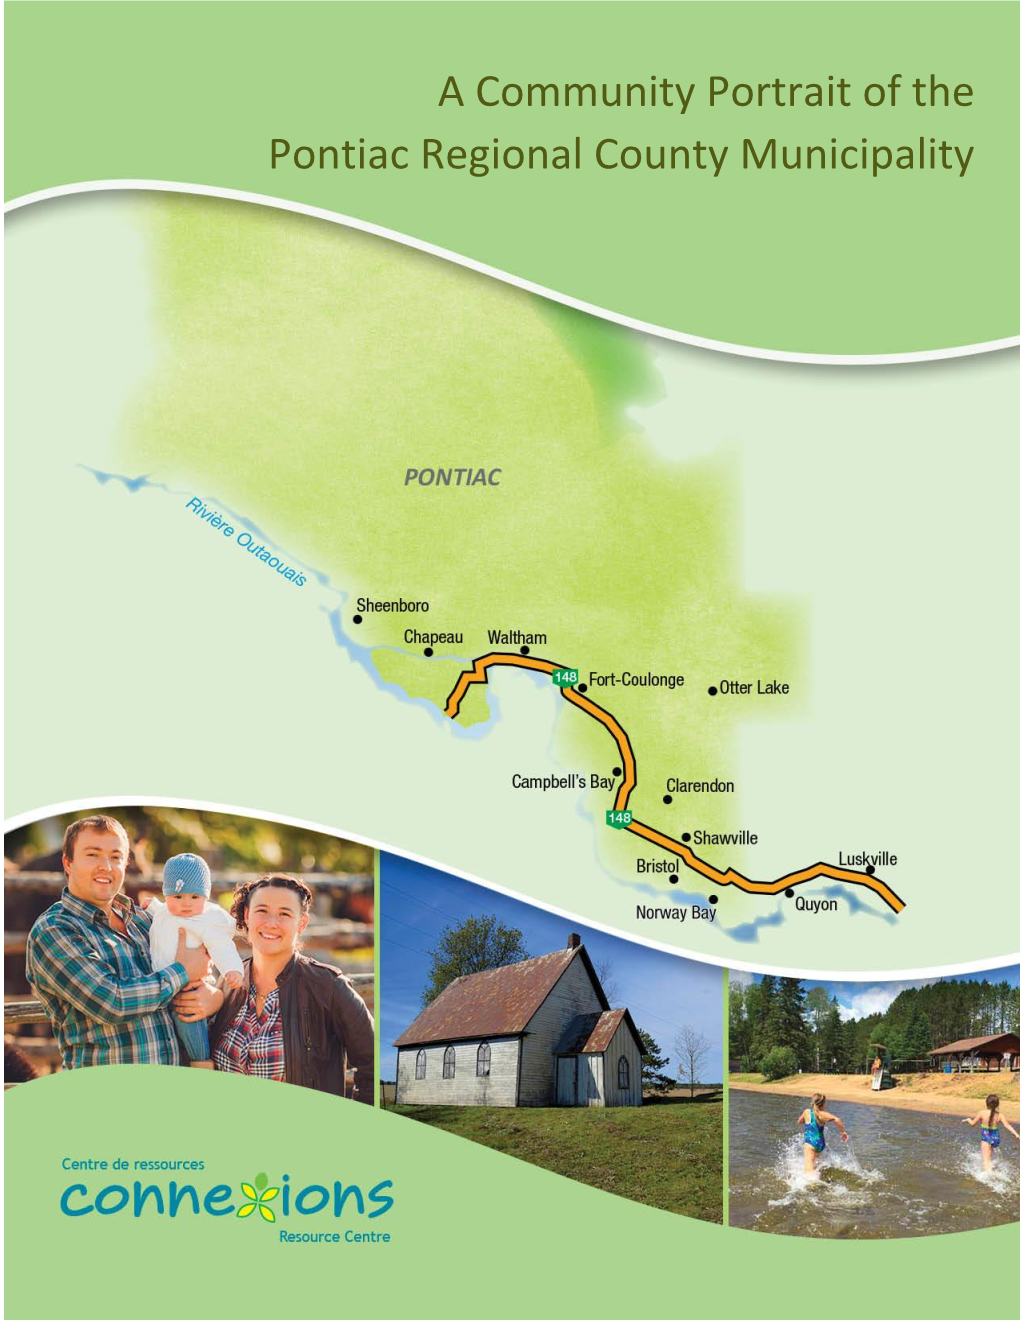 A Community Portrait of the Pontiac Regional County Municipality